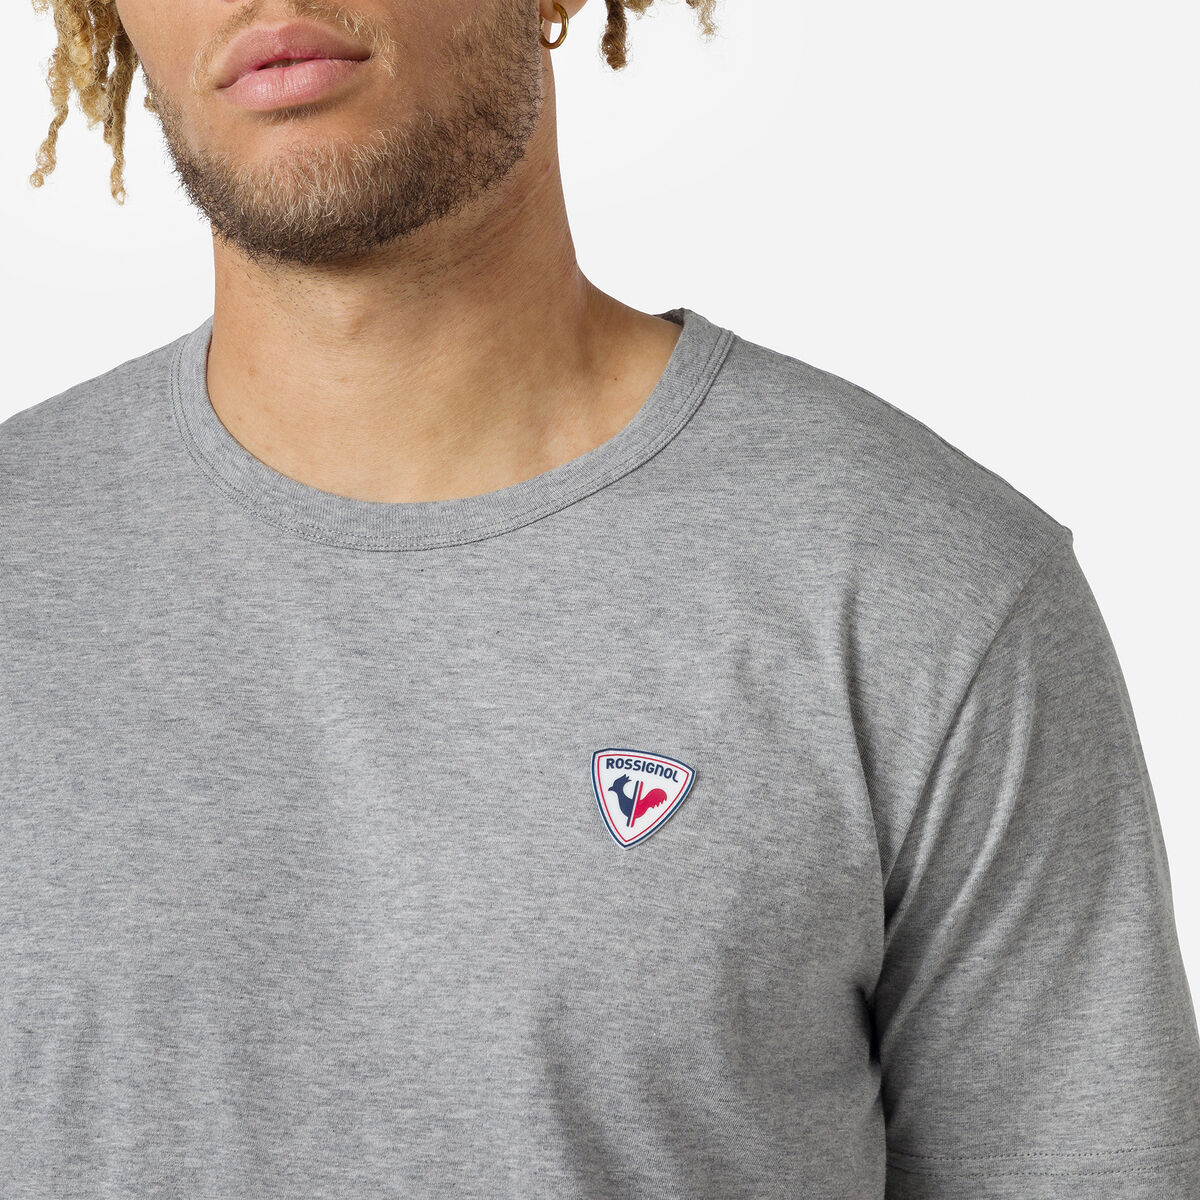 Rossignol Einfarbiges Logo Herren-T-Shirt grey